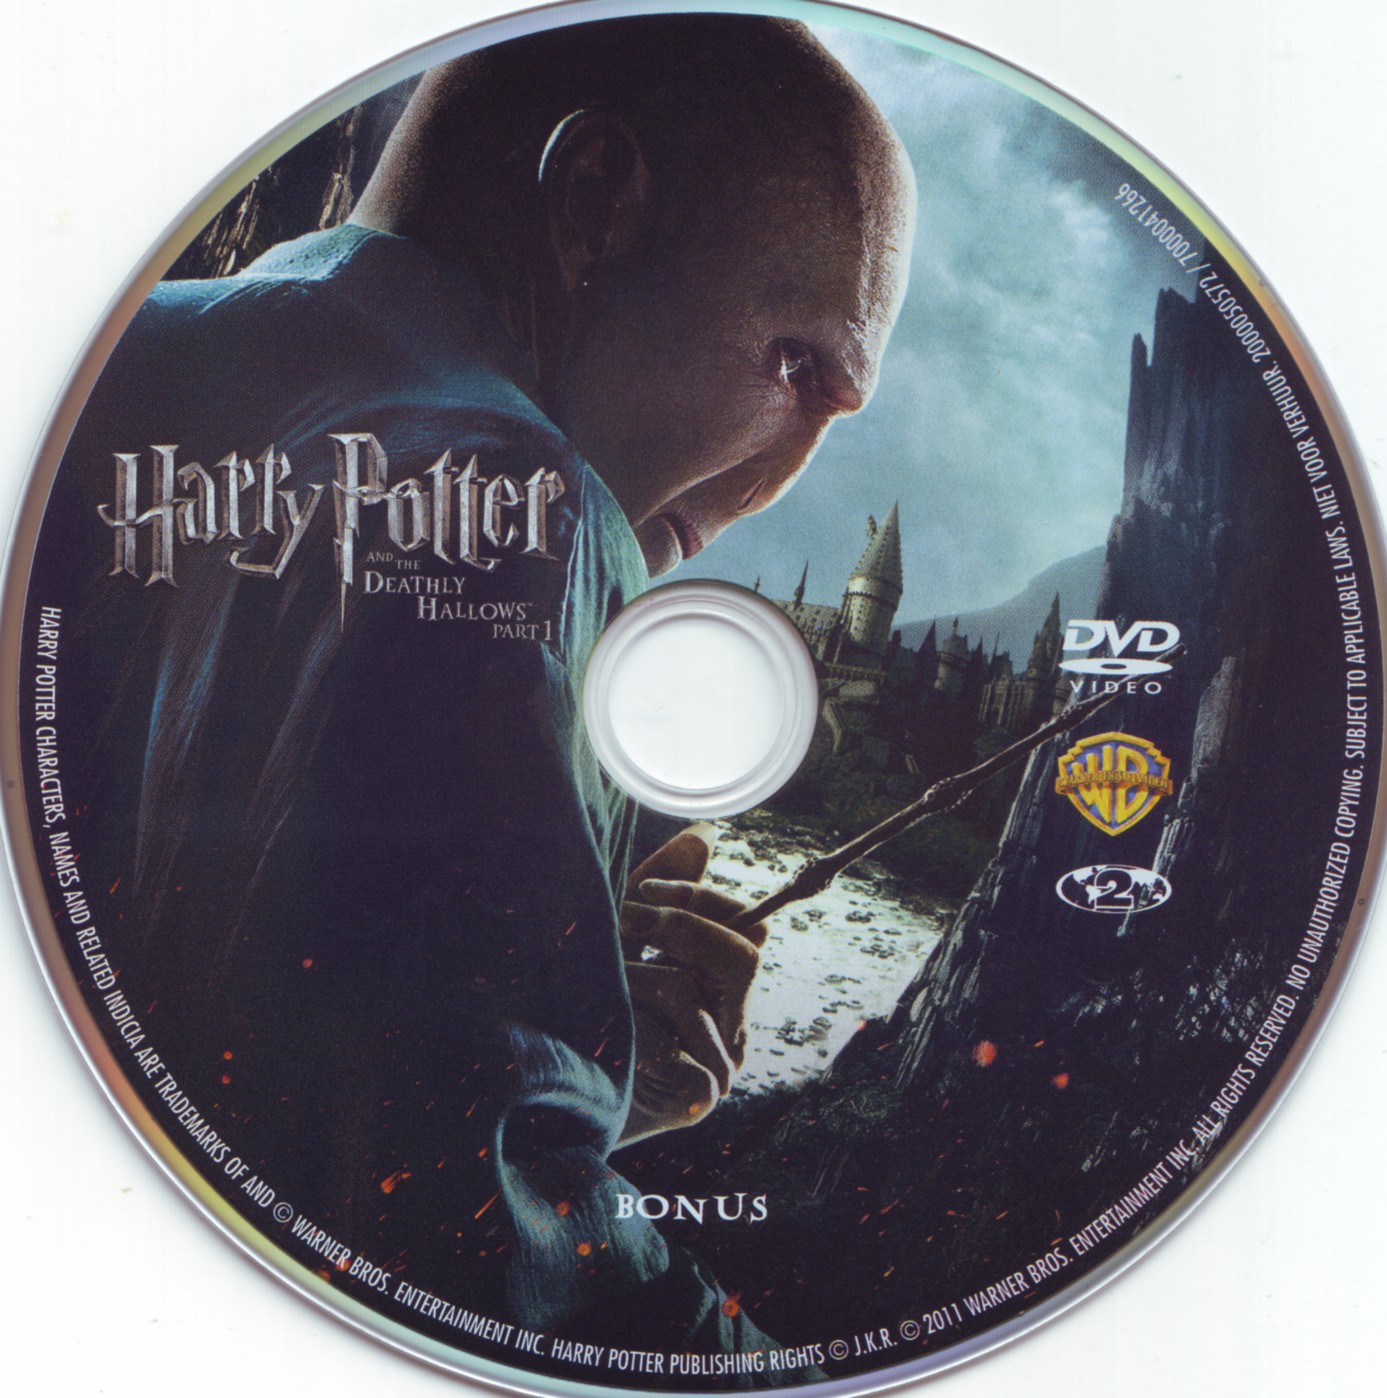 Harry Potter et les reliques de la mort - 1re partie (BONUS)